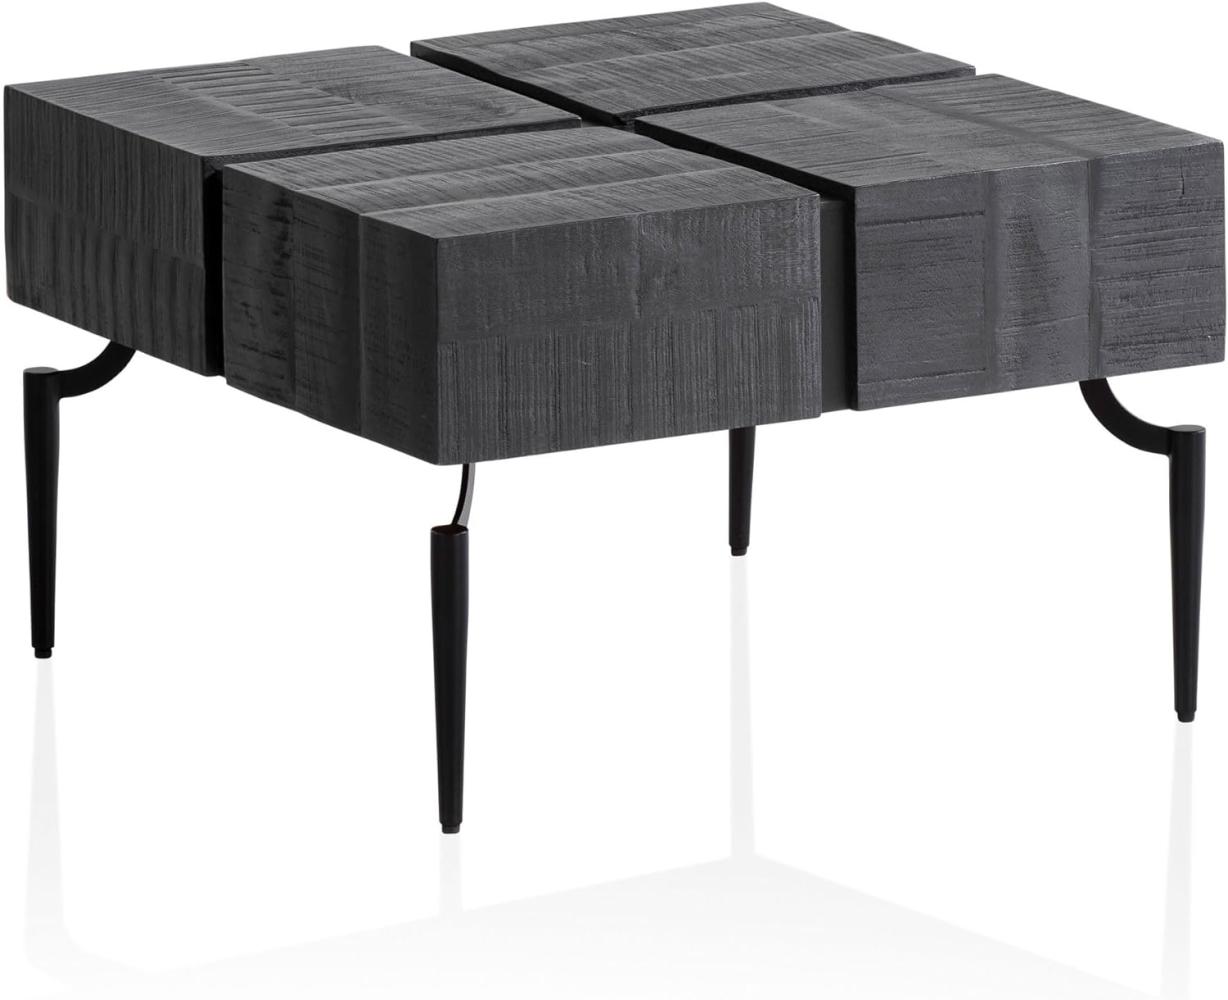 FineBuy Couchtisch Massivholz 60x60x40 cm Quadratisch mit Metallgestell, Kleiner Sofatisch Würfel-Form, Wohnzimmertisch Couch Modern, Kaffeetisch Cube Schwarz Bild 1